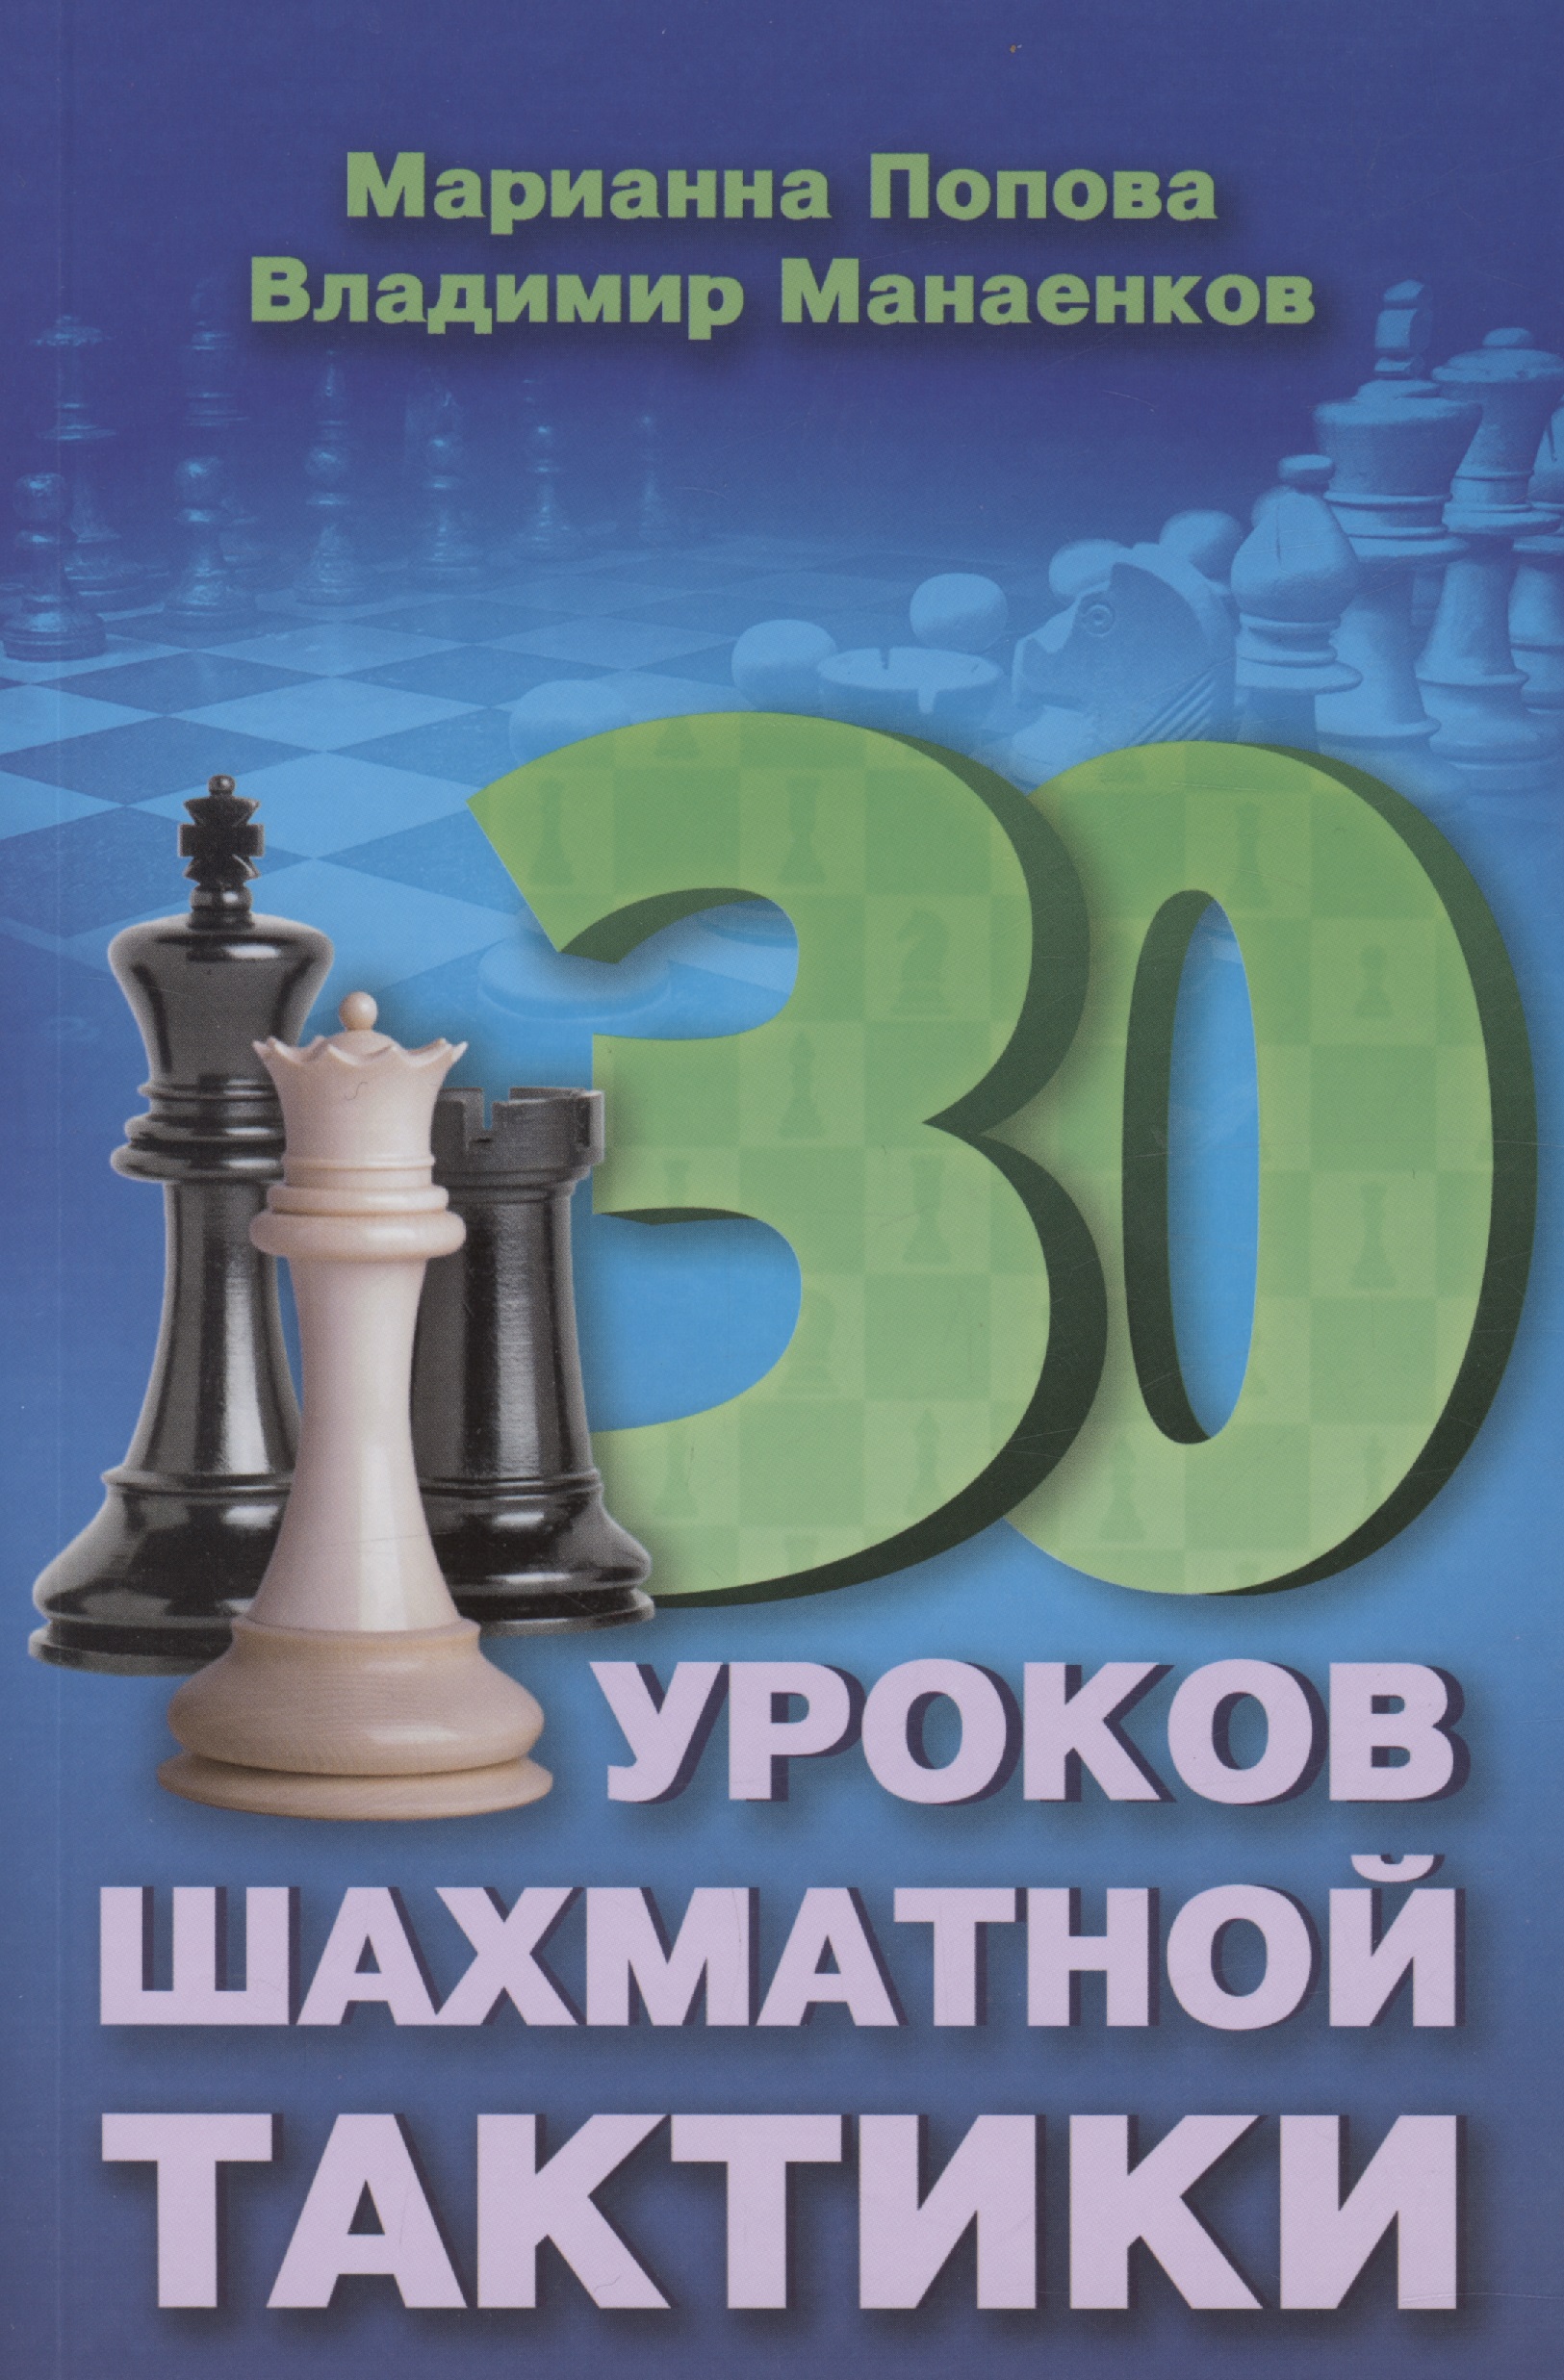 30 шахматных уроков шахматной тактики